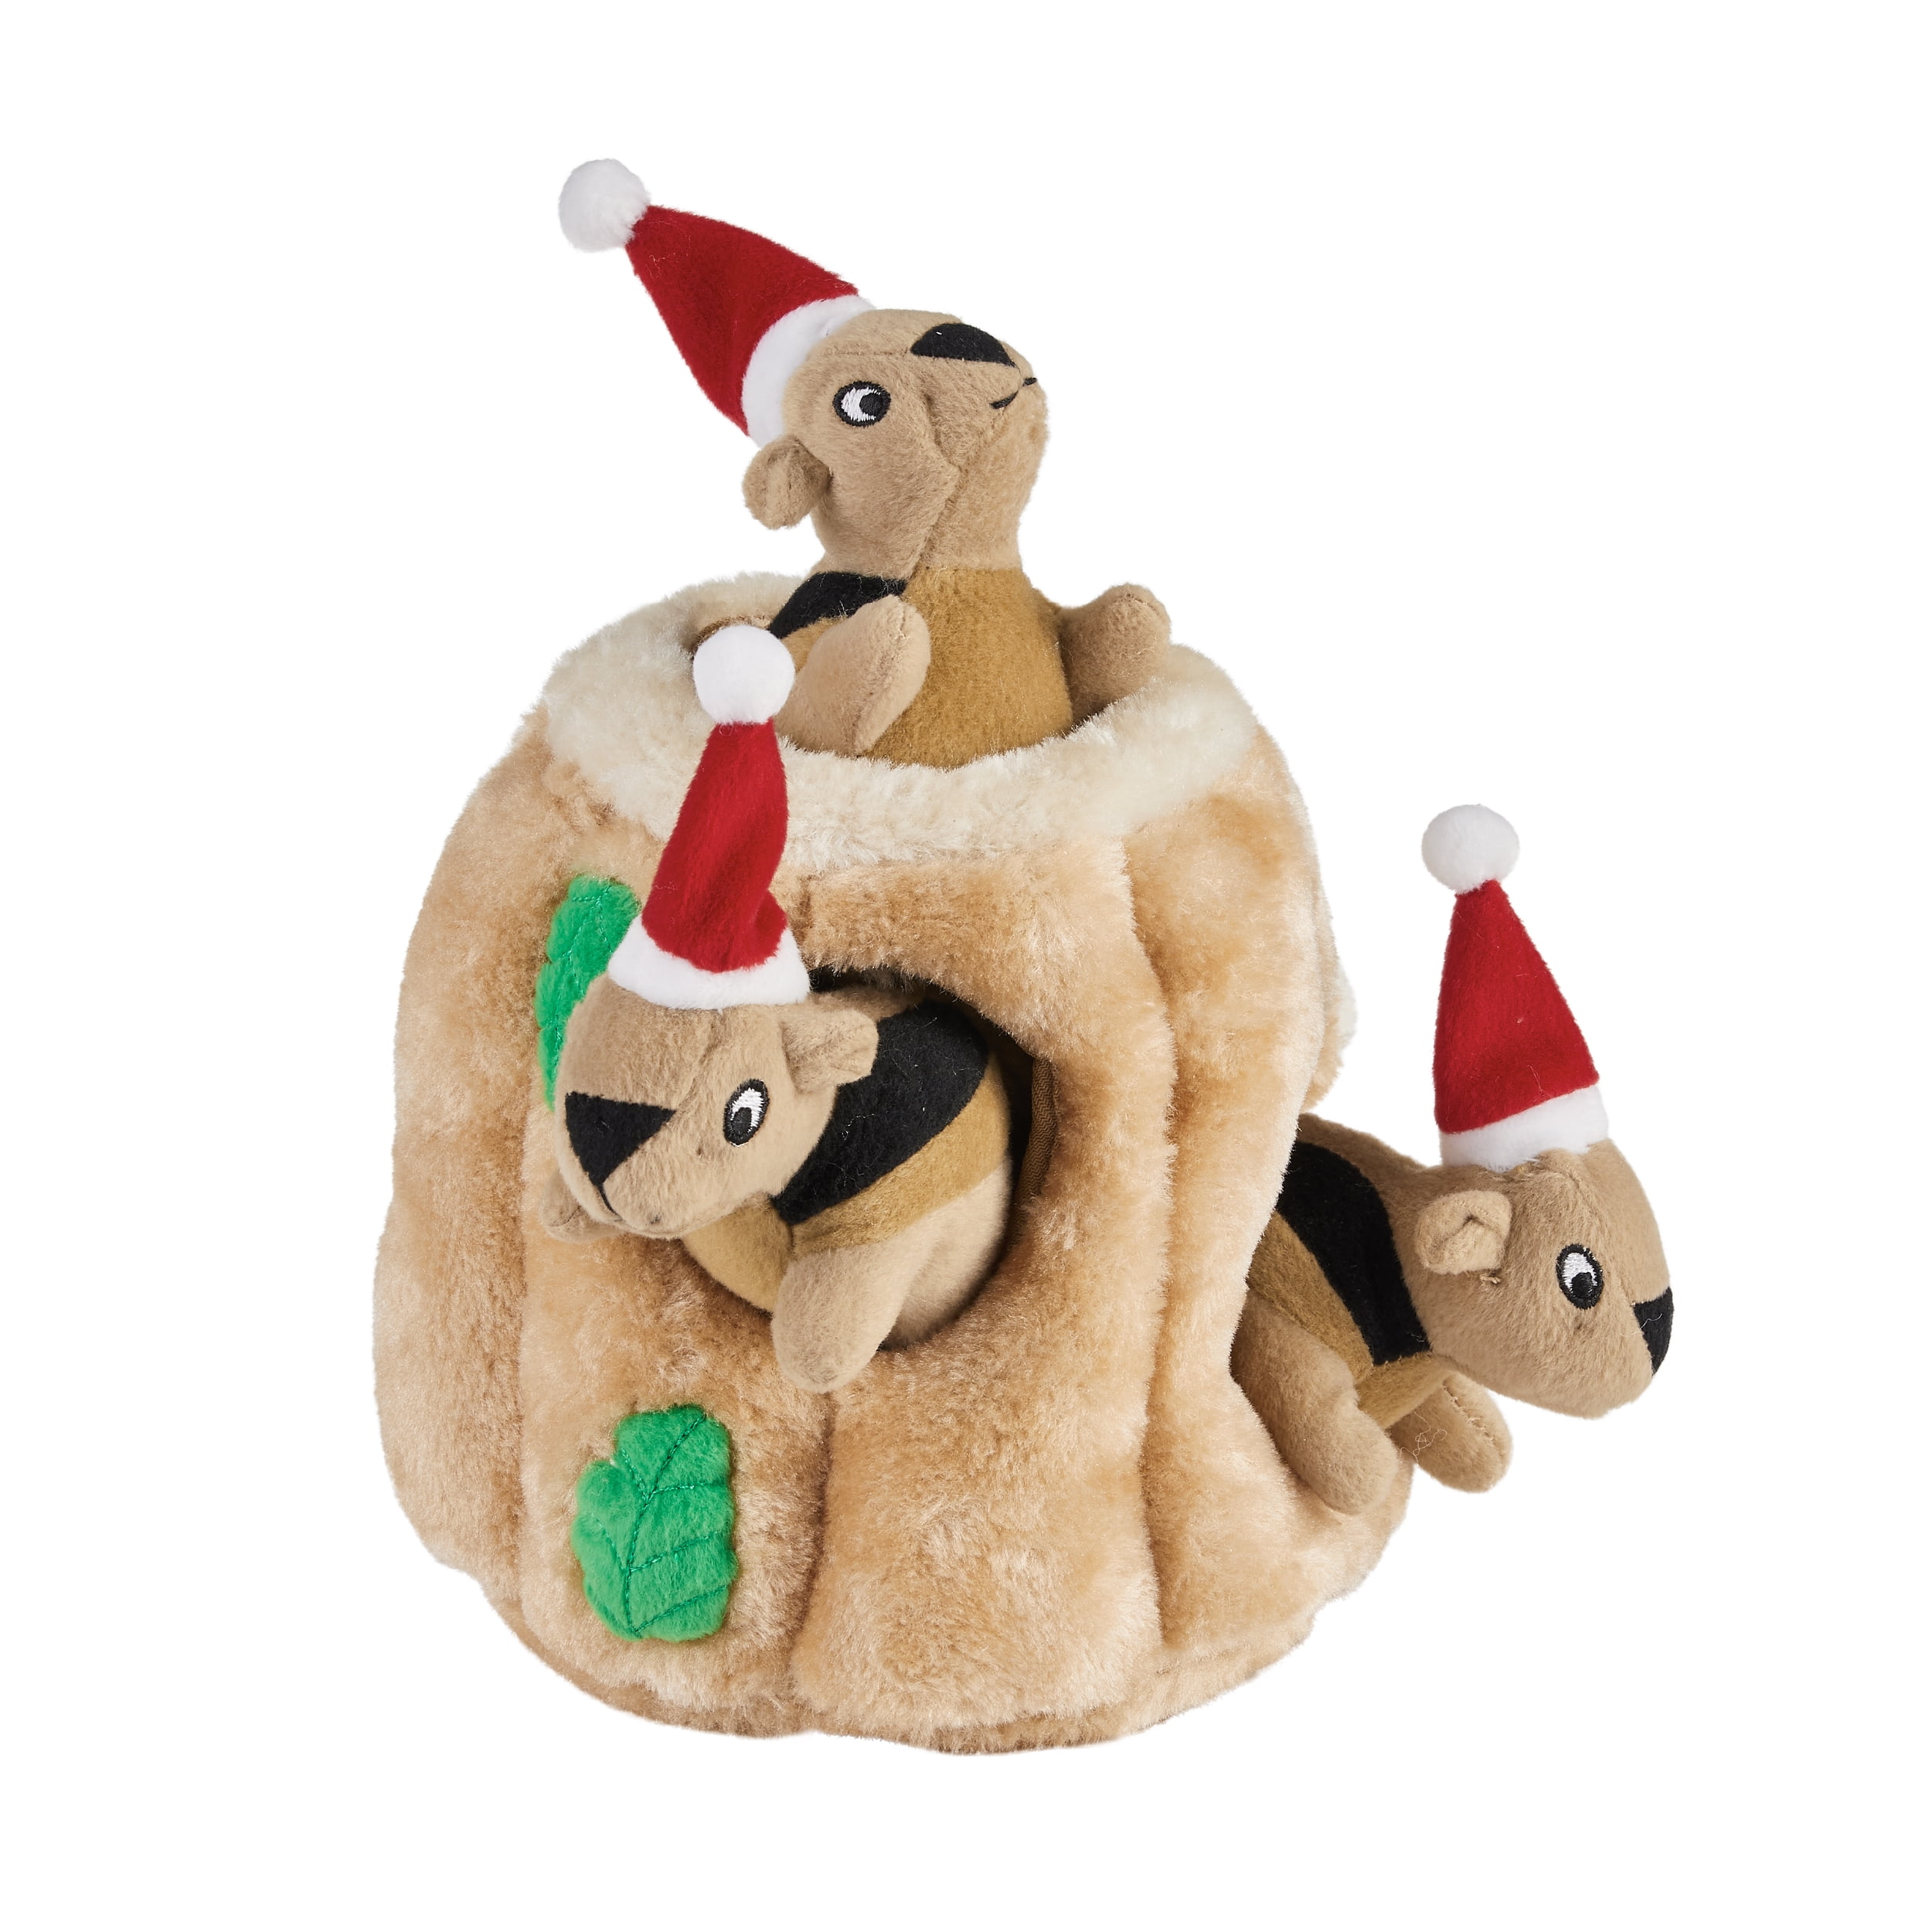 Outward Hound Holiday Winter Woodland Plush Dog Toys 3 pk